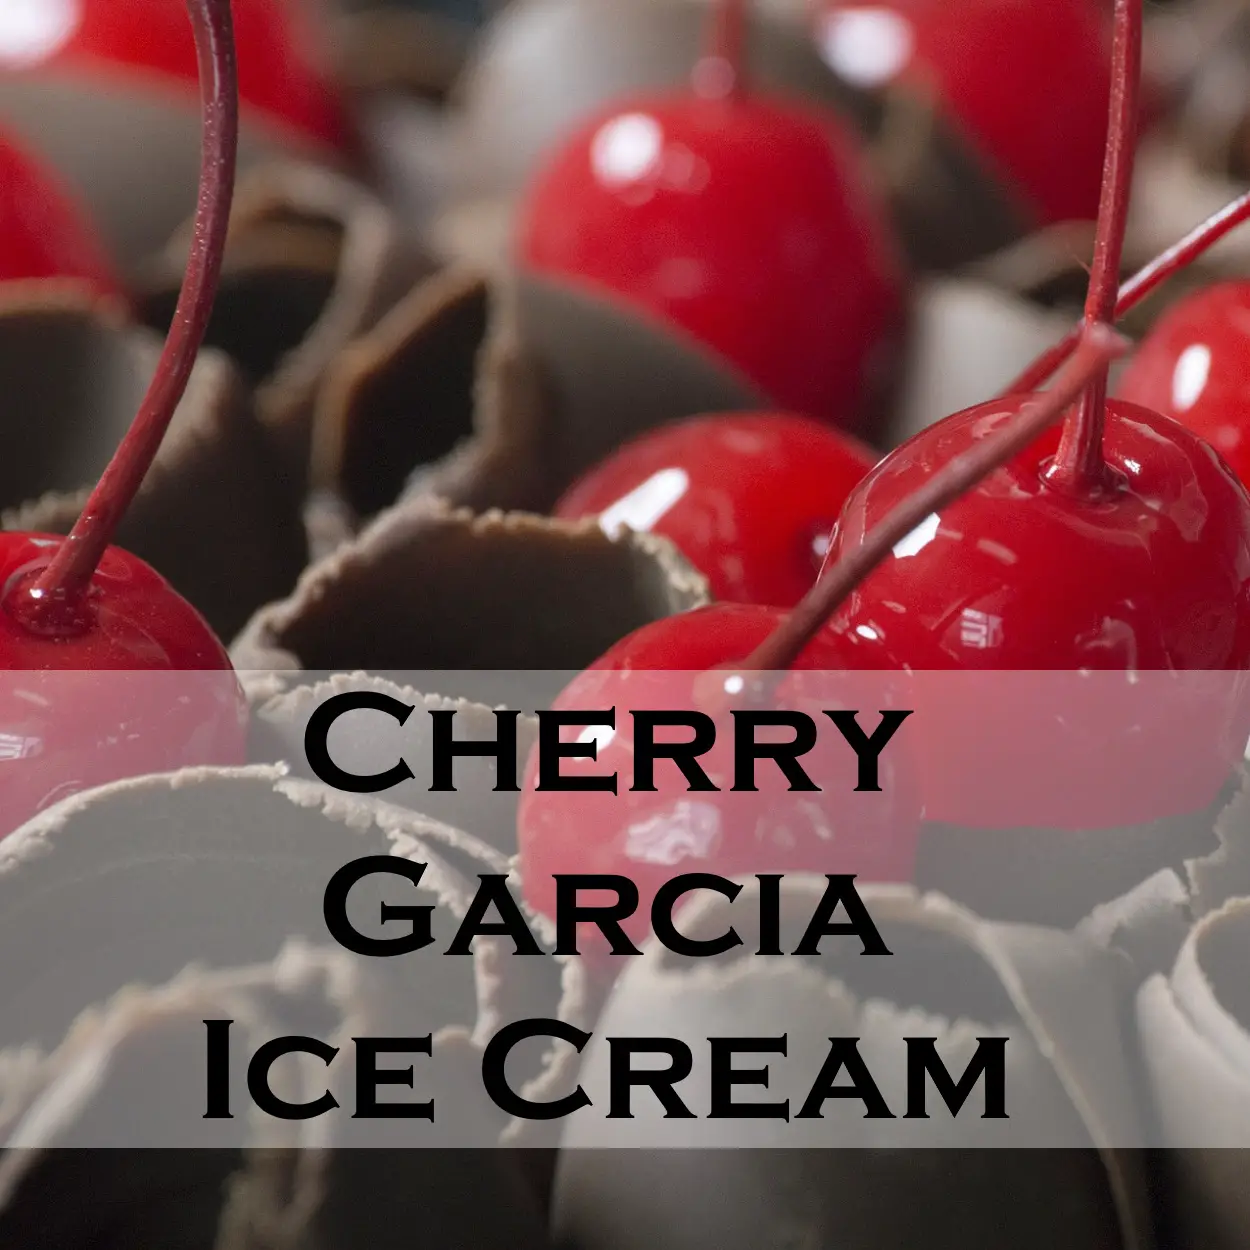 Cherry Garcia Ice Cream